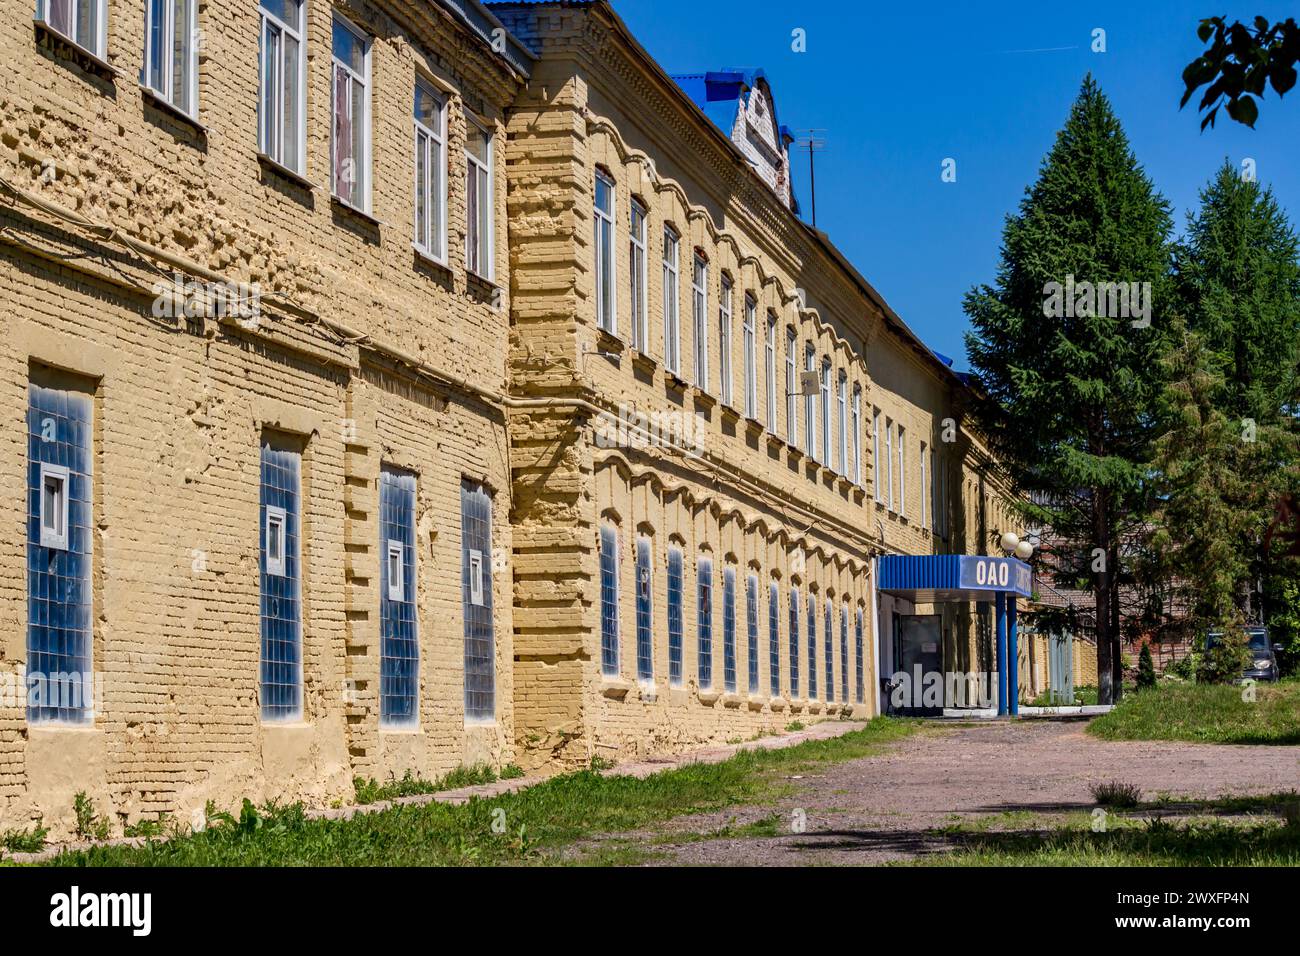 Belousovo, Russie - juin 2019 : usine de tissage Belousovsky. La façade d'un bâtiment historique du début du XXe siècle en brique. Banque D'Images